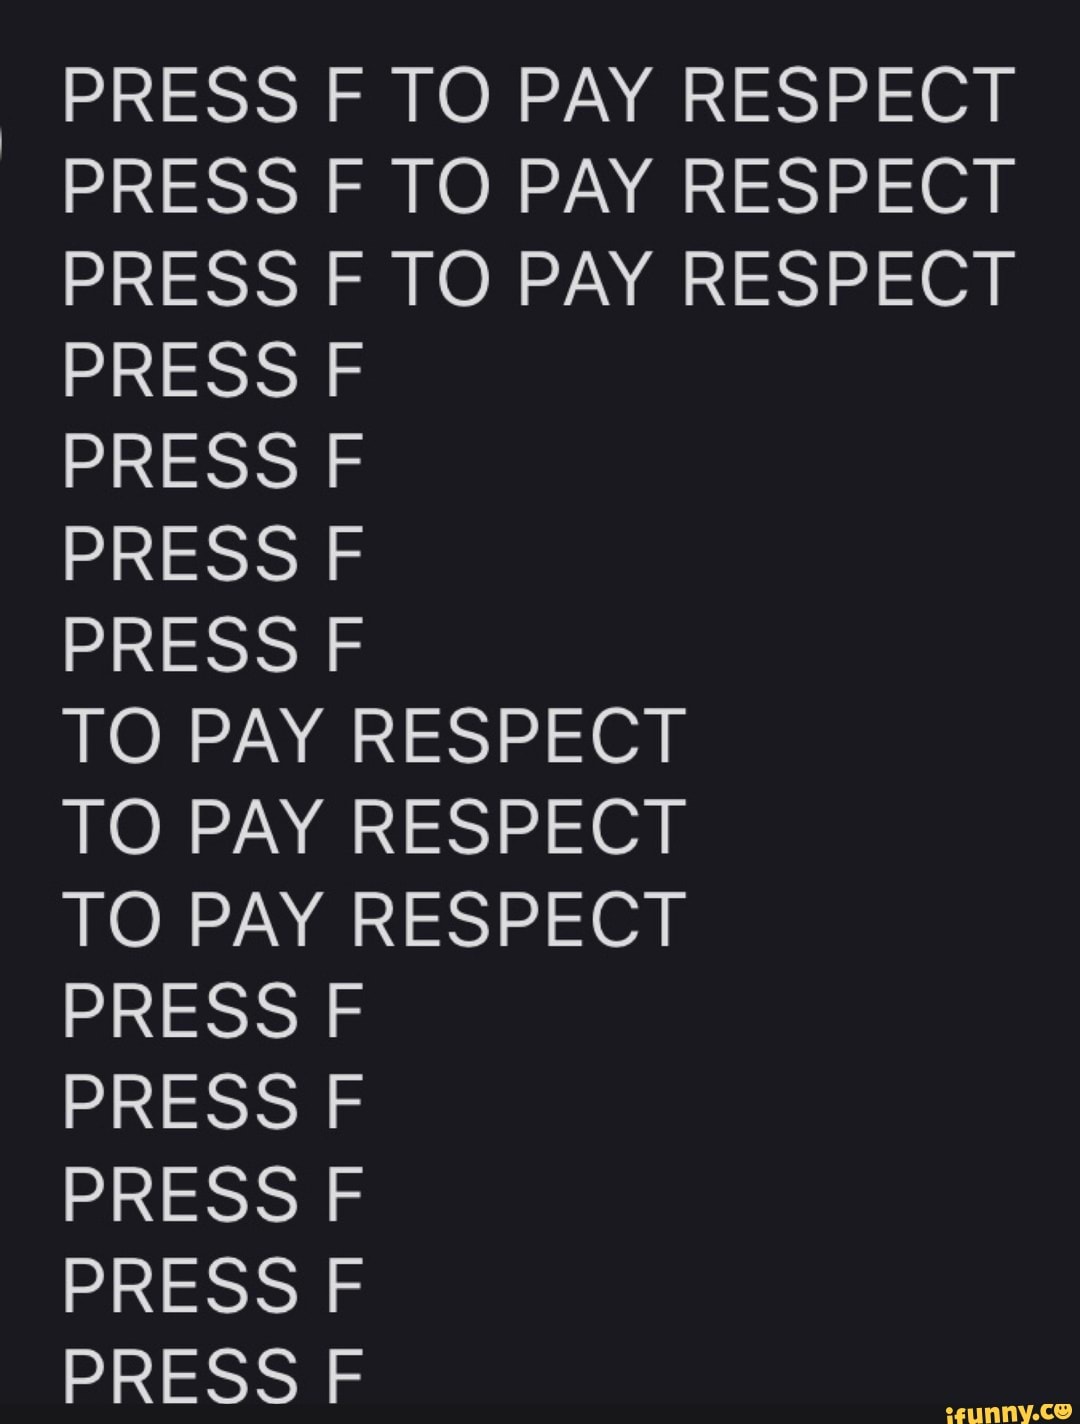 Press F to Pay Respects (PRESSIONE F PARA PRESTAR RESPEITO) - iFunny Brazil